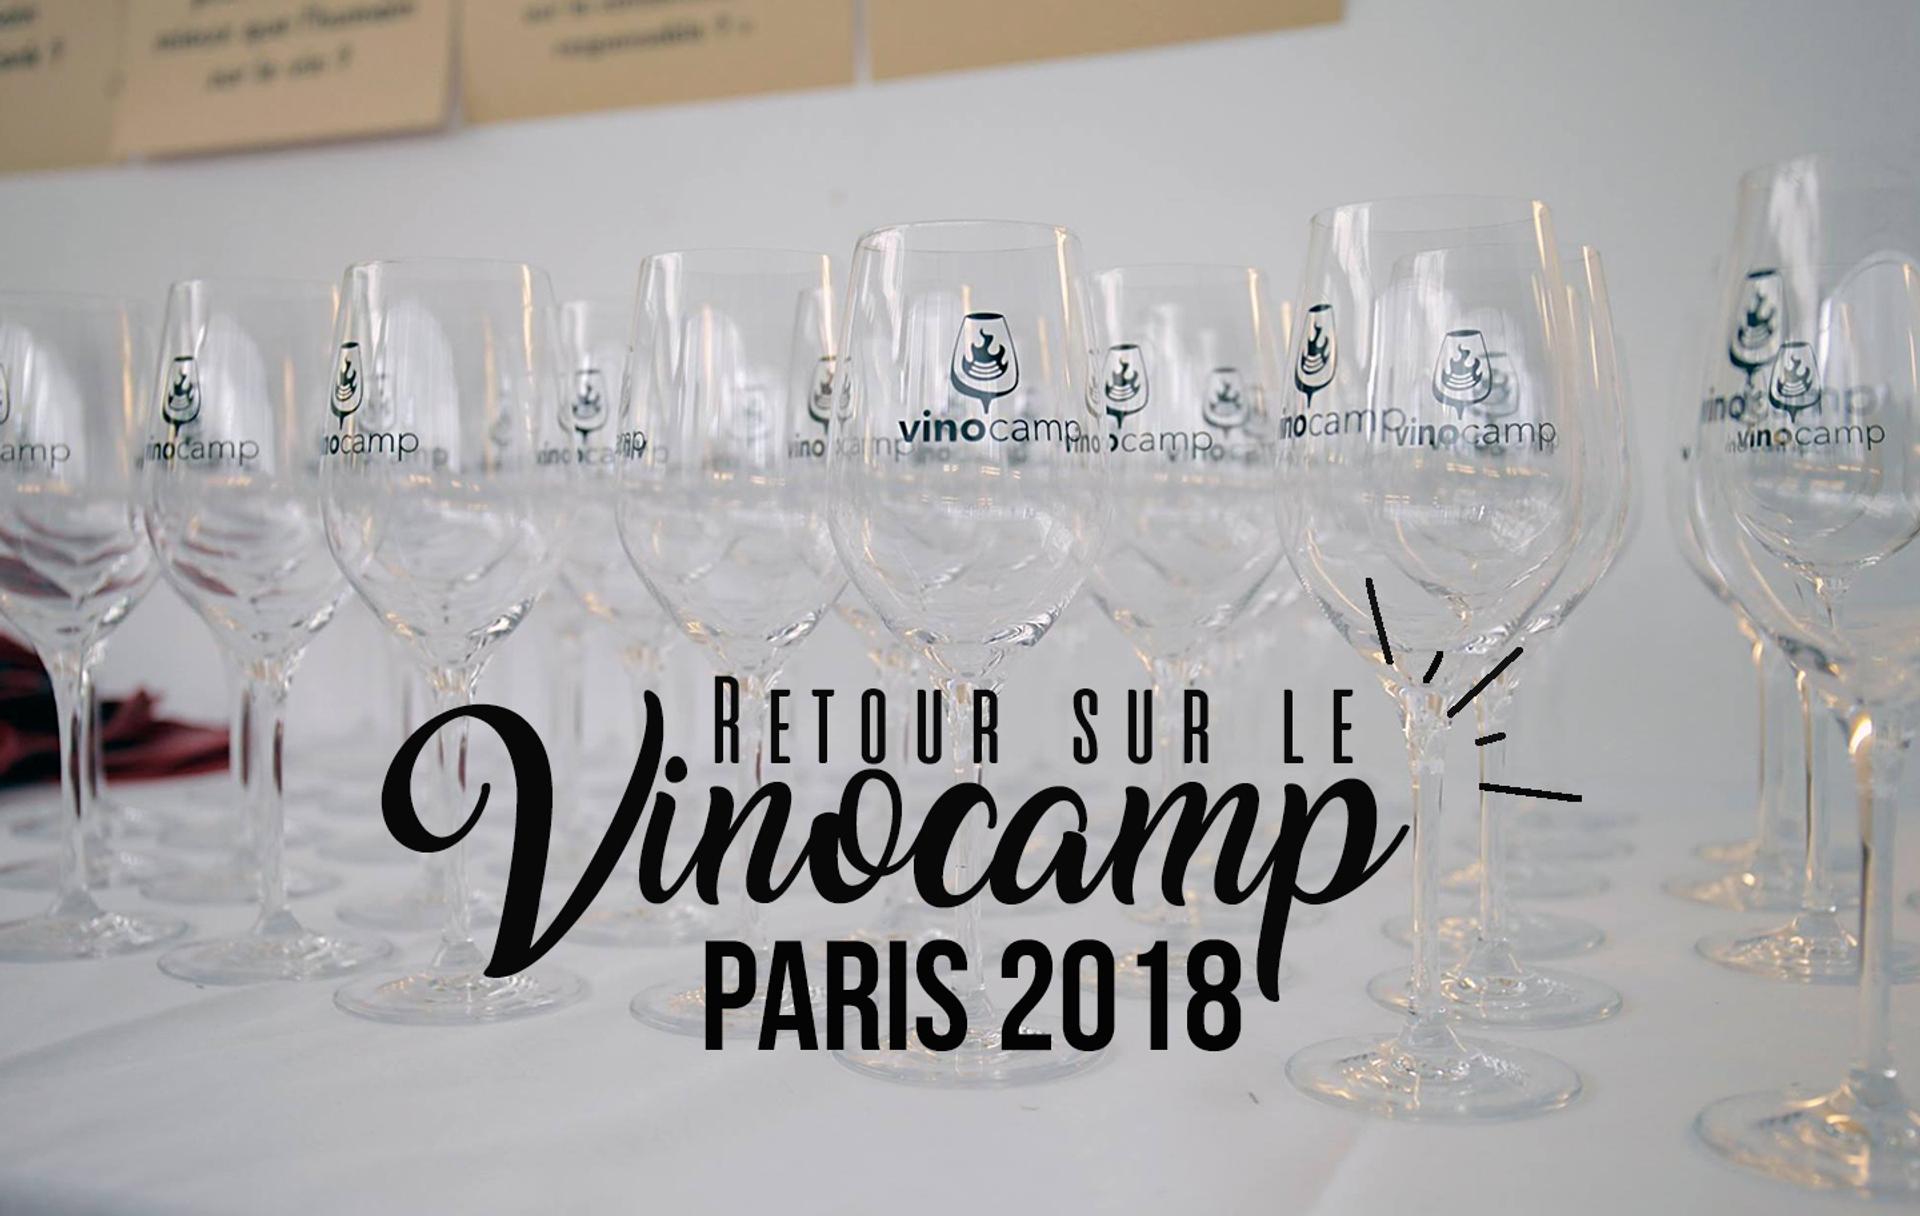 Retour sur le Vinocamp Paris 2018